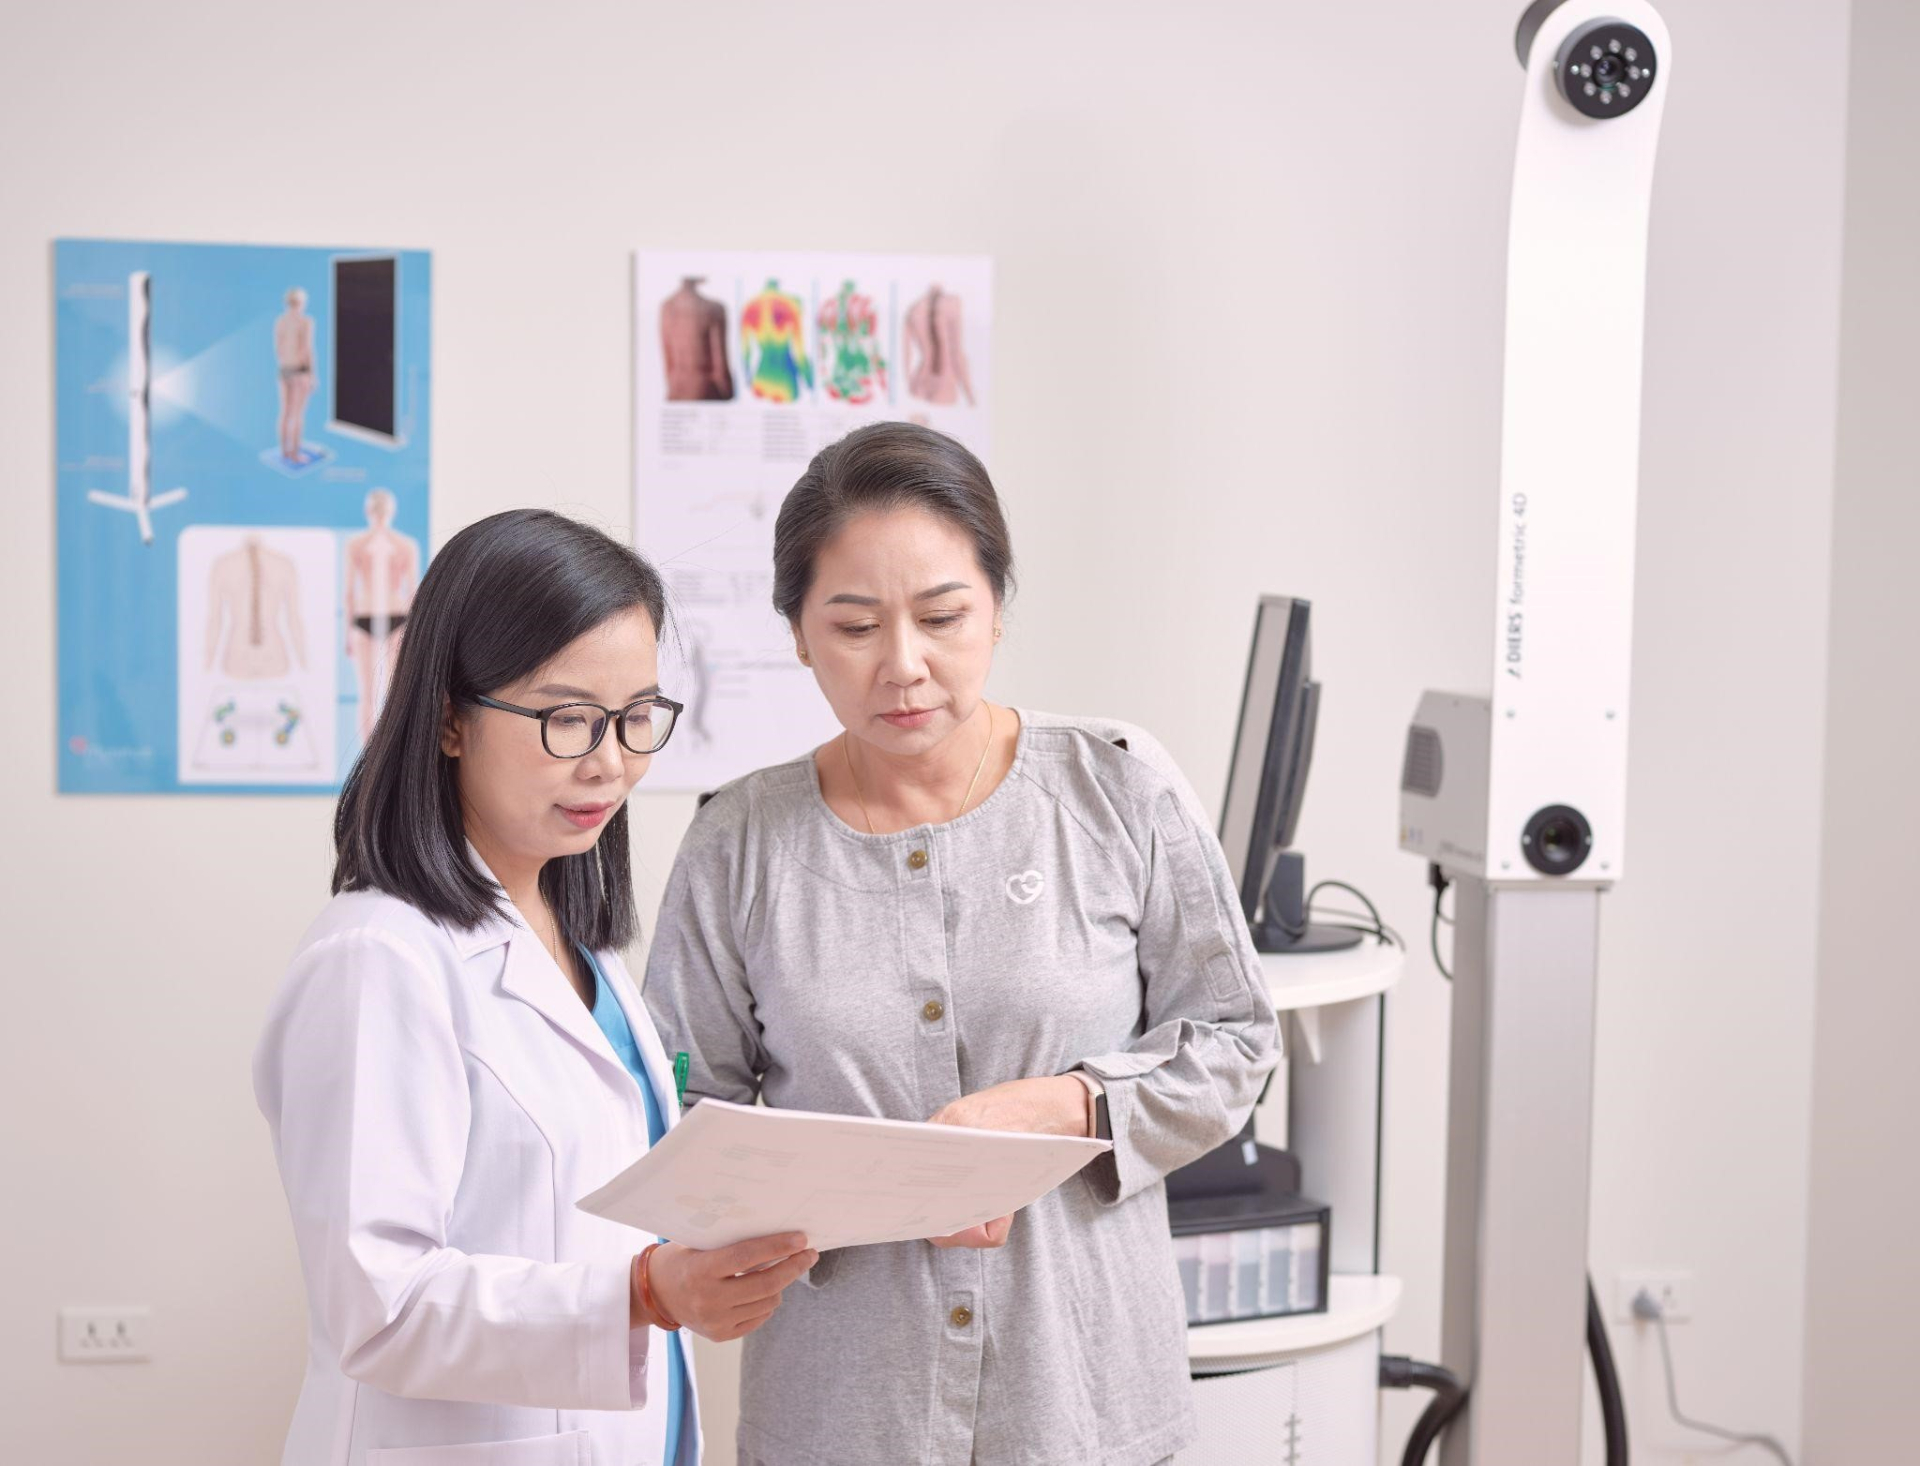 Myrehab Matsuoka: Trung tâm trị liệu và phục hồi chức năng hợp tác Việt Nam - Nhật Bản tiên phong mô hình PHCN toàn diện - ảnh 1